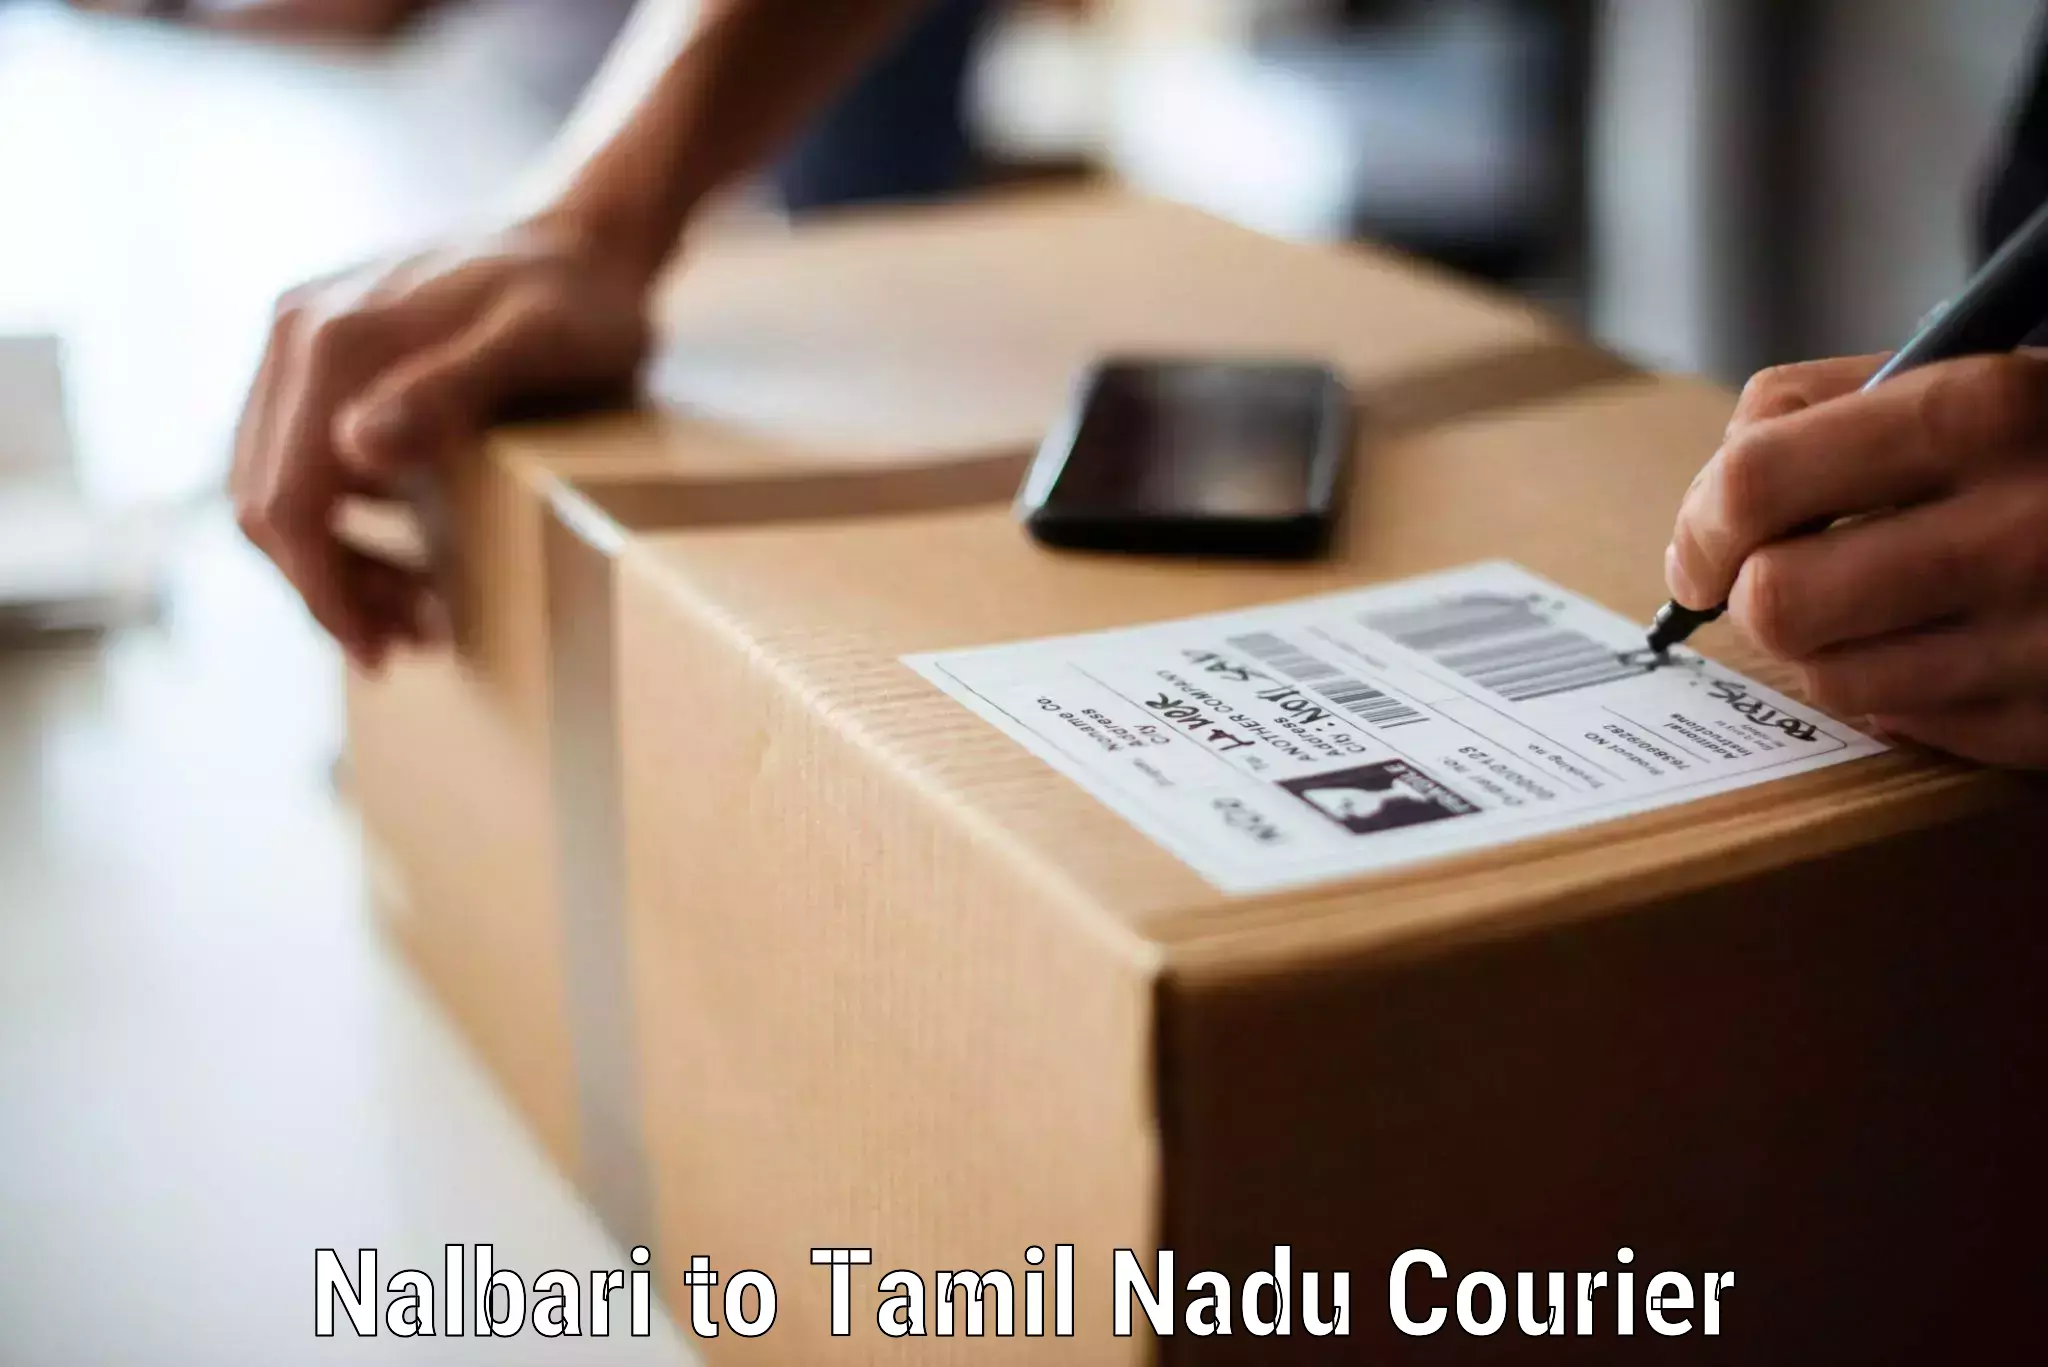 Stress-free moving Nalbari to Coimbatore